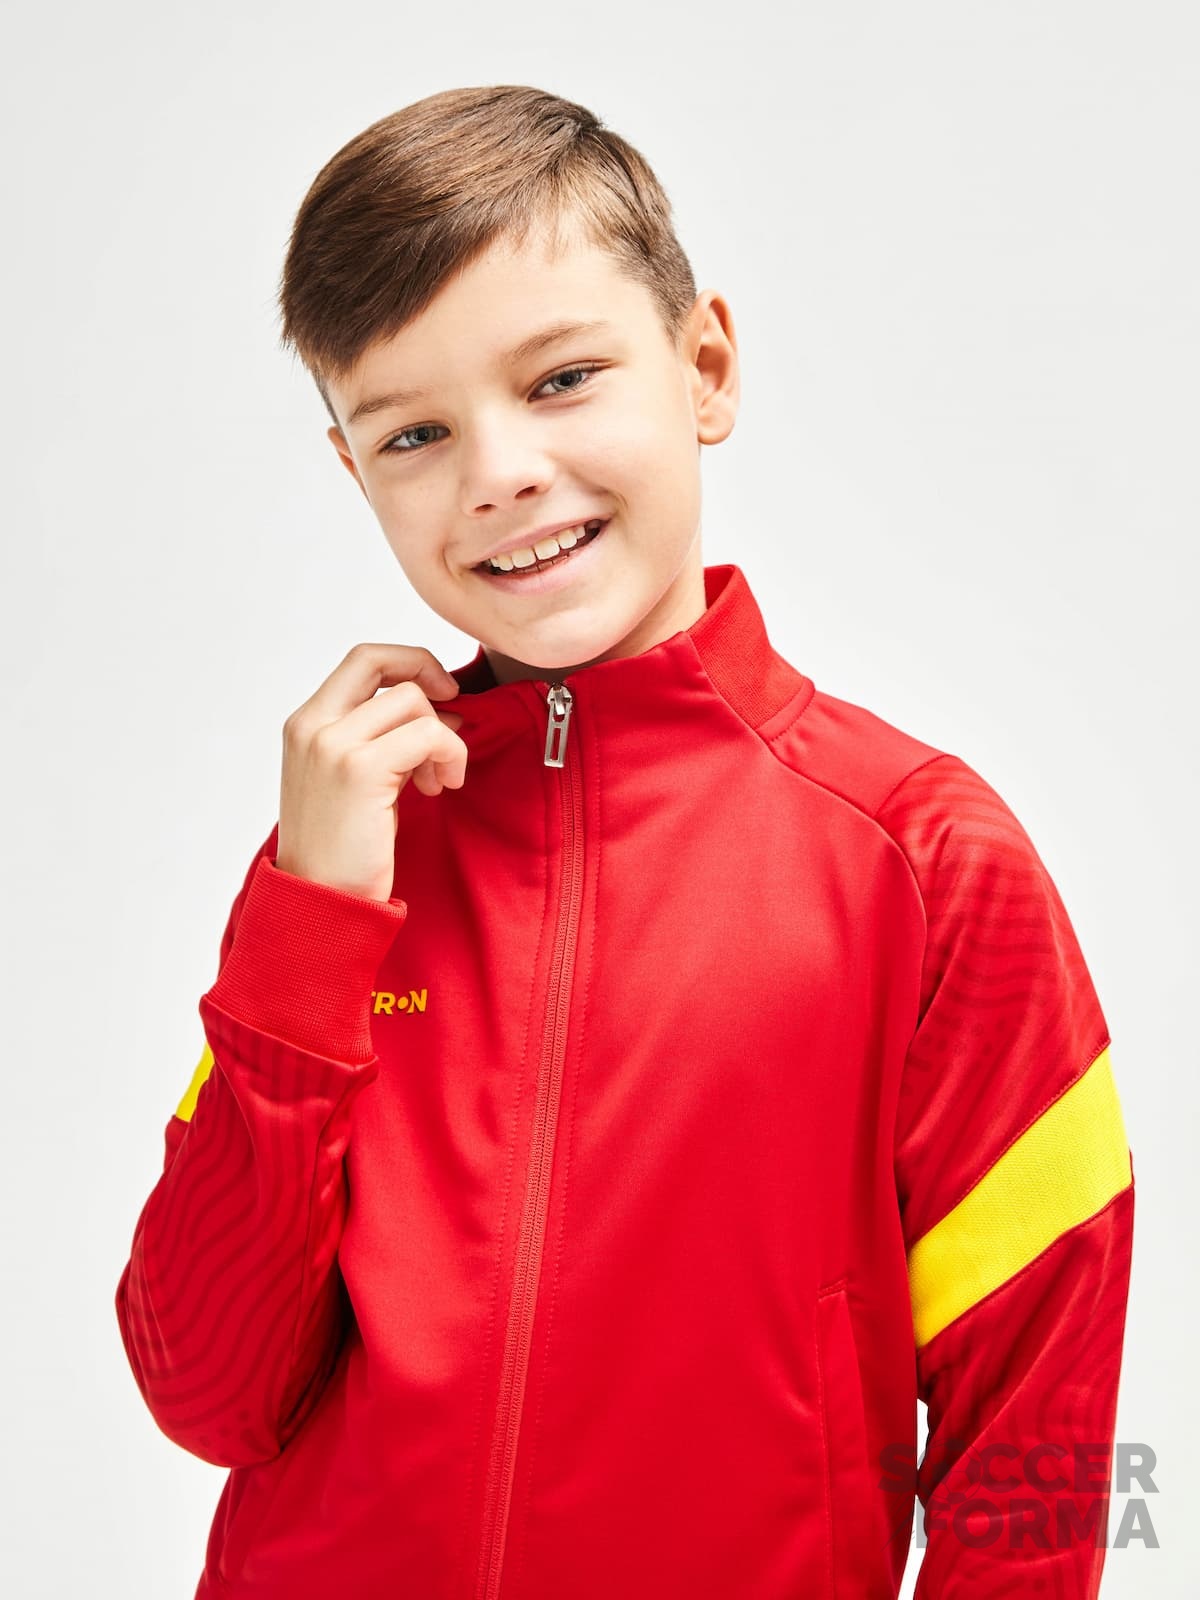 Детский тренировочный костюм Jetron Fast черно-красный